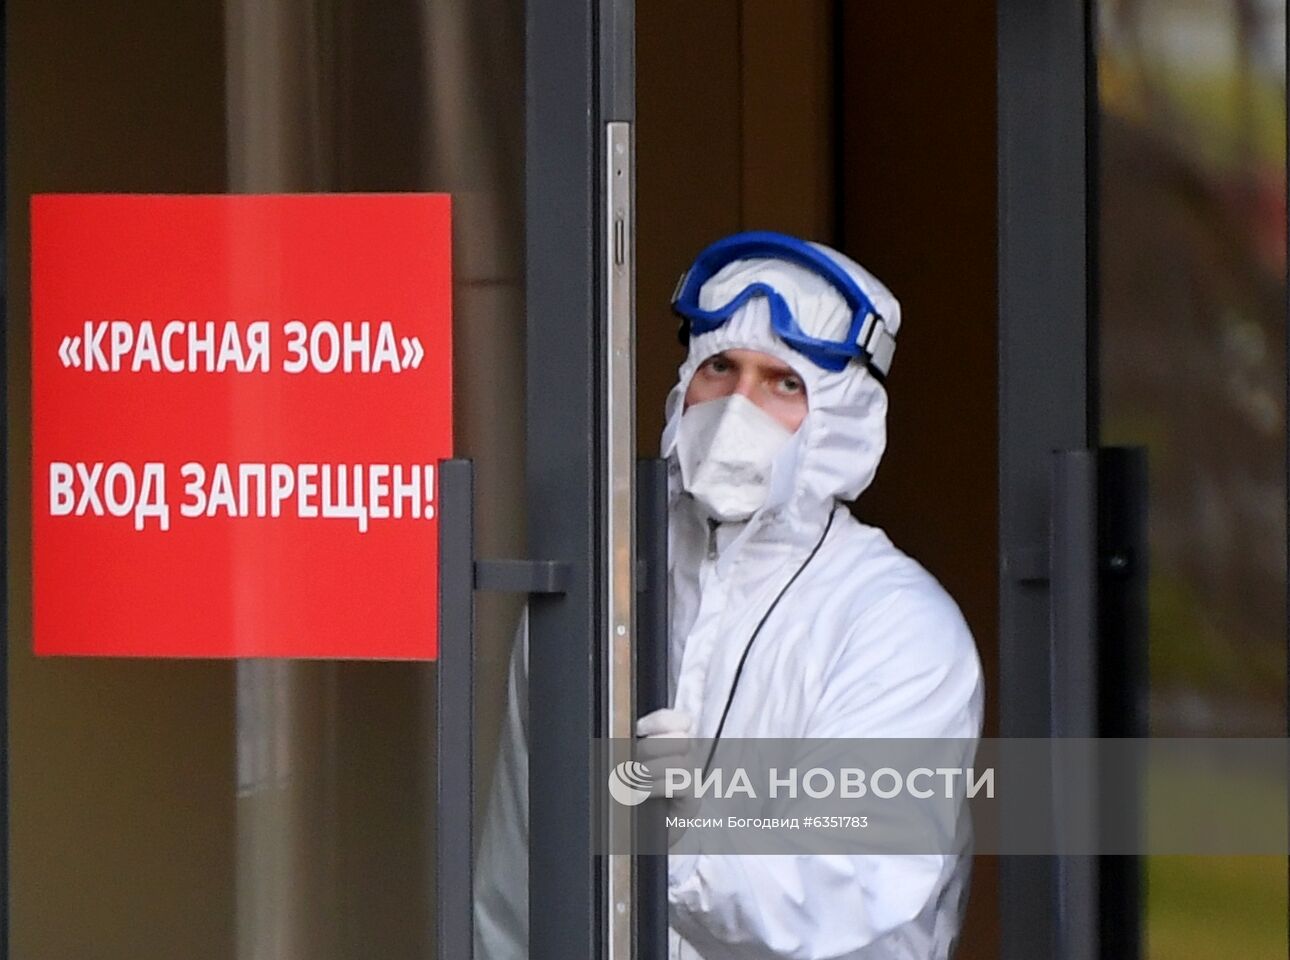 Очереди из машин скорой помощи у инфекционной больницы в Казани